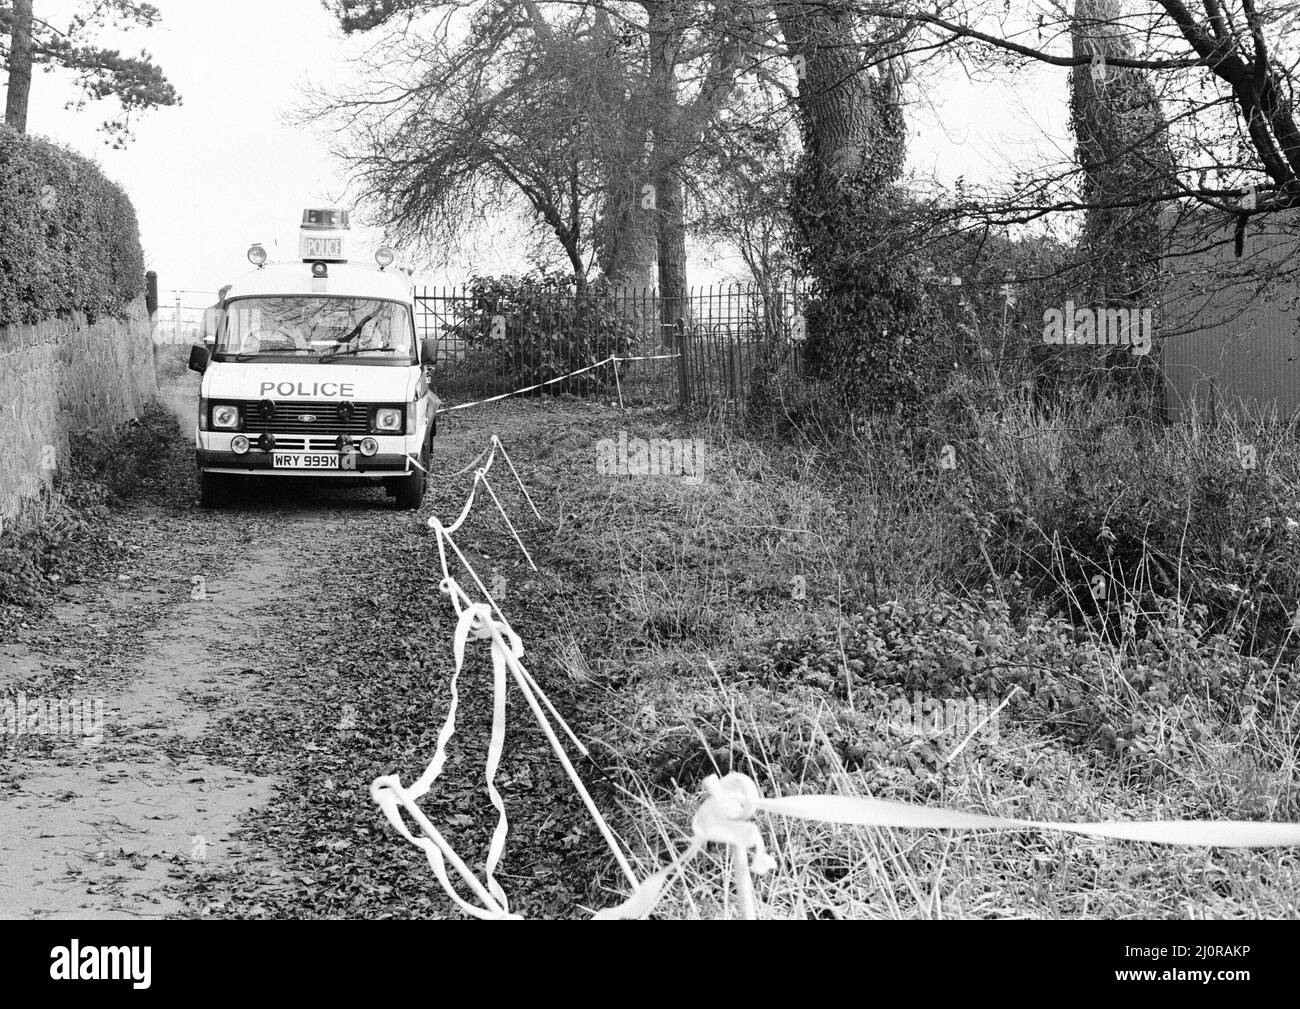 Tatort polizeiliche Untersuchung des Wanderweges, der lokal als Black Pad in Narborough, Leicestershire, bekannt ist, wo das 15-jährige Schulmädchen Lynda Mann vergewaltigt und erwürgt aufgefunden wurde, aufgenommen am Mittwoch, den 23.. November 1983. Colin Pitchfork wurde zu lebenslanger Haft (1988) verurteilt, nachdem er die separaten Morde an Lynda Mann im Alter von 15 (1983) und Dawn Ashworth im Alter von 15 (1986) zugegeben hatte. Er war der erste, der aufgrund von DNA-Fingerabdrücken wegen Mordes verurteilt wurde und der erste, der infolge eines DNA-Massenscreenings gefangen wurde. Stockfoto